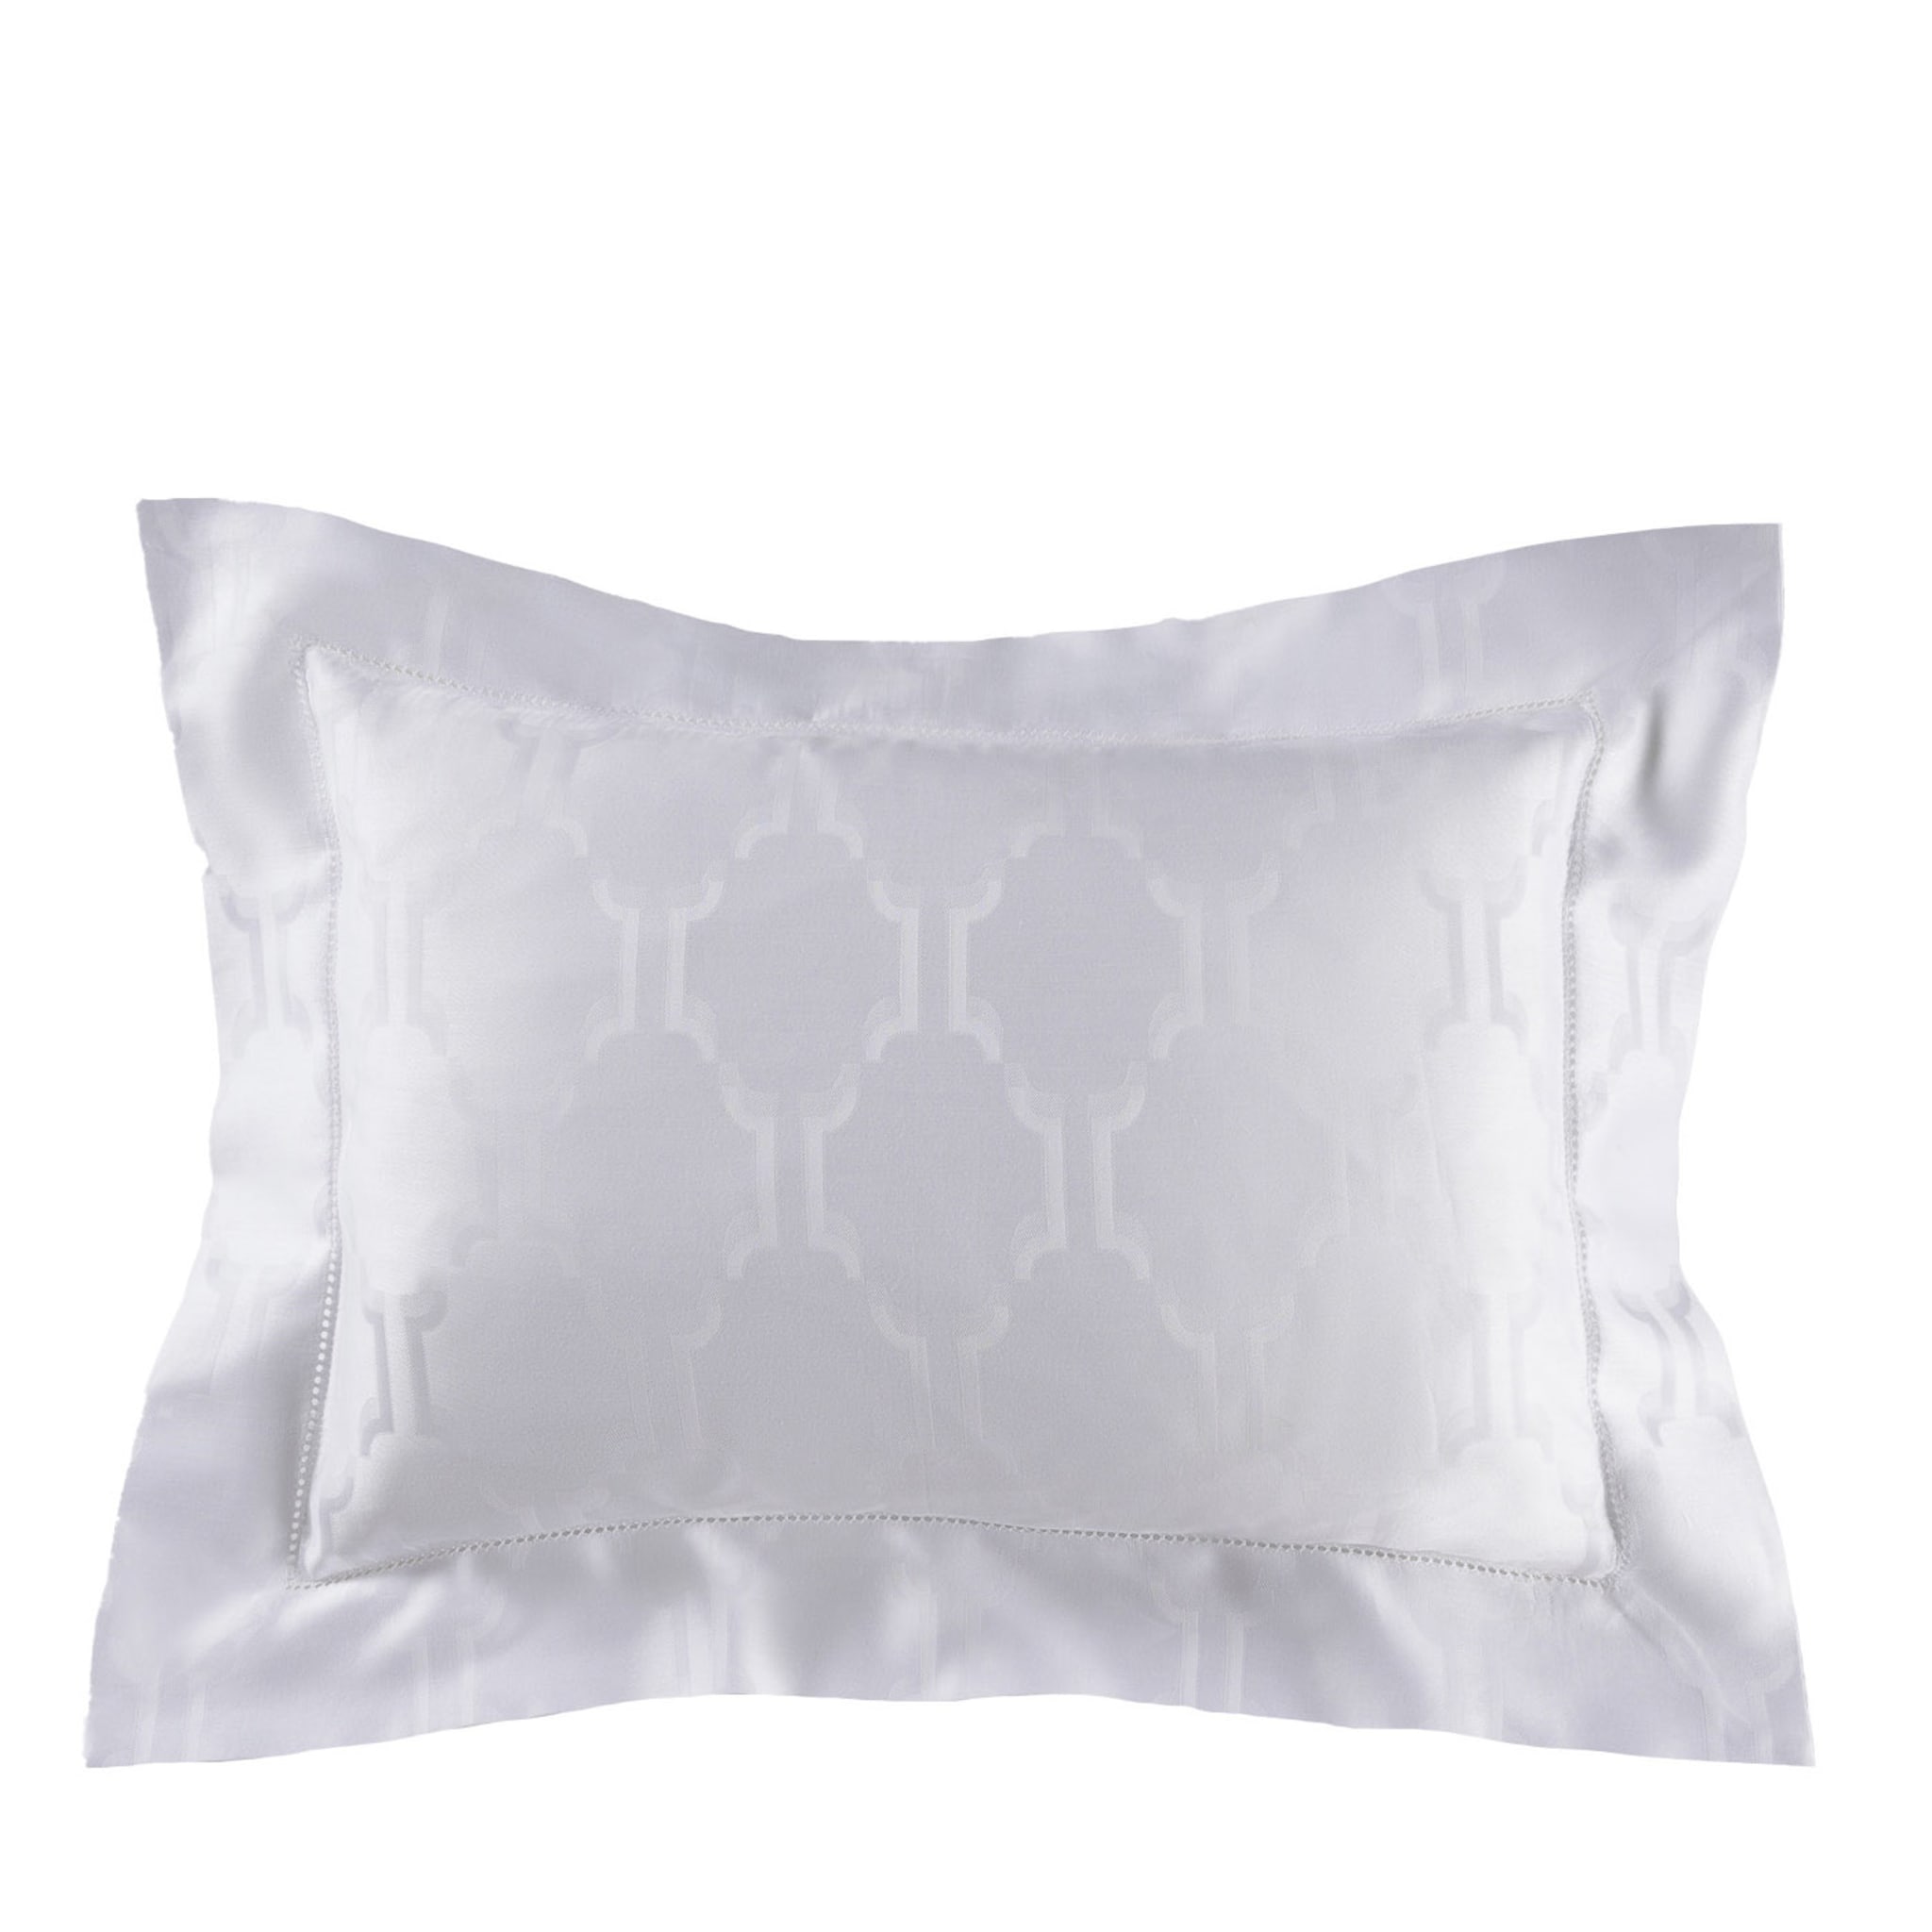 Waldorf Boudoir Rectangular Patterned White Pillowcase - Main view